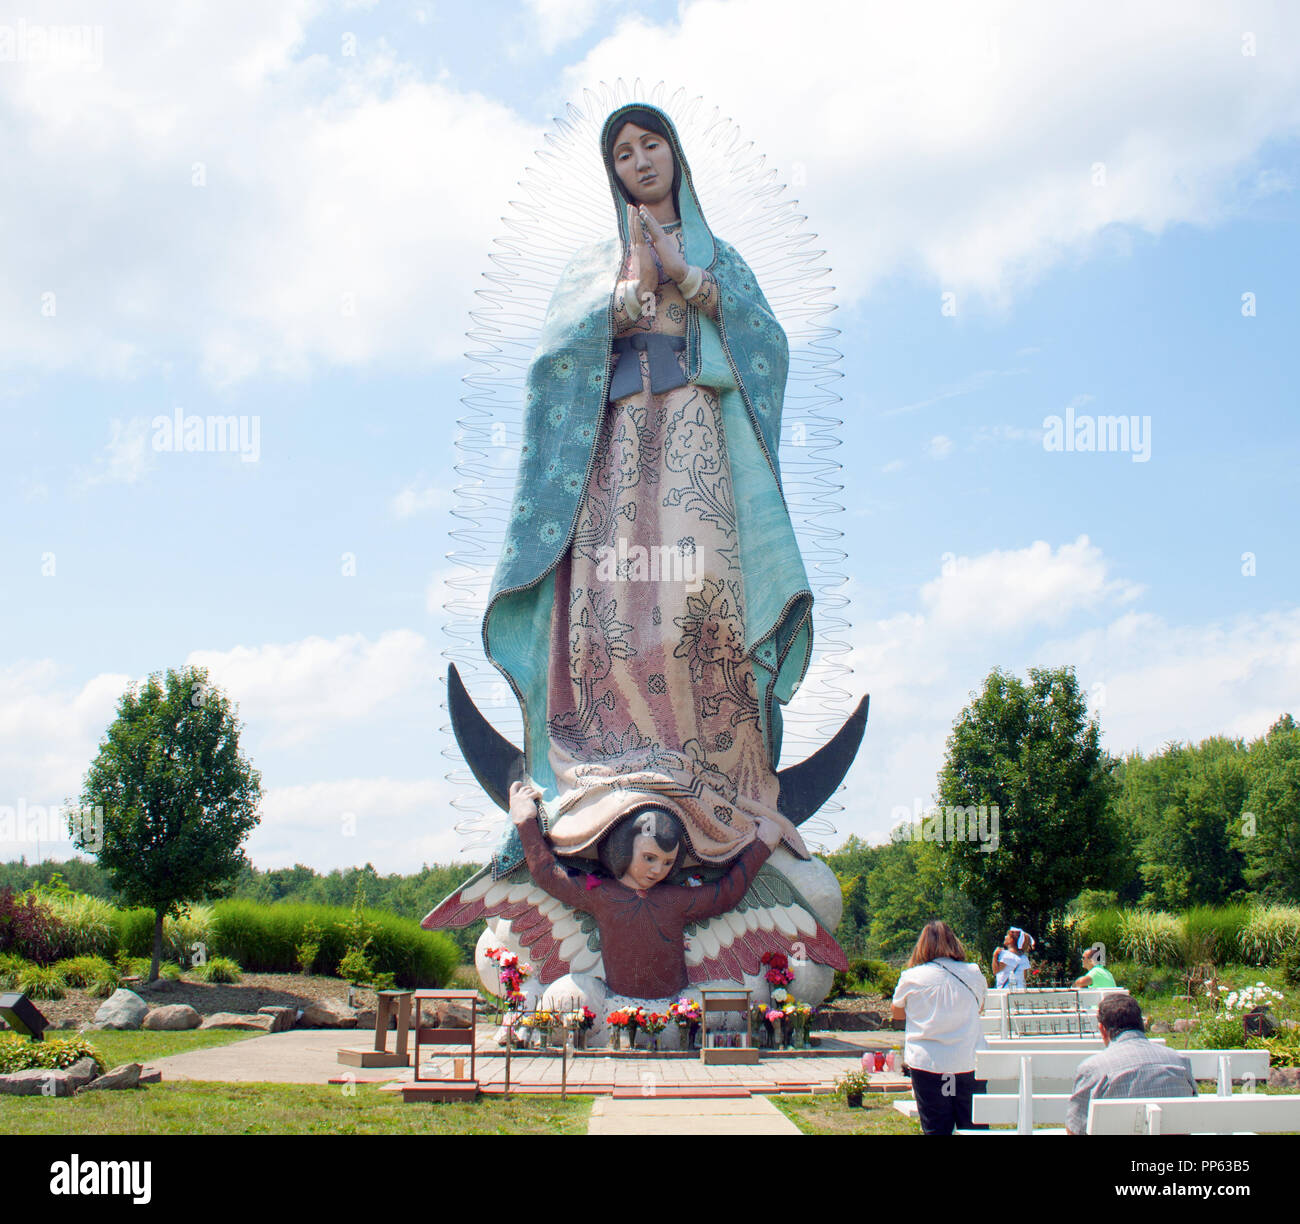 All 100+ Images estatua de la virgen de guadalupe en ohio Excellent